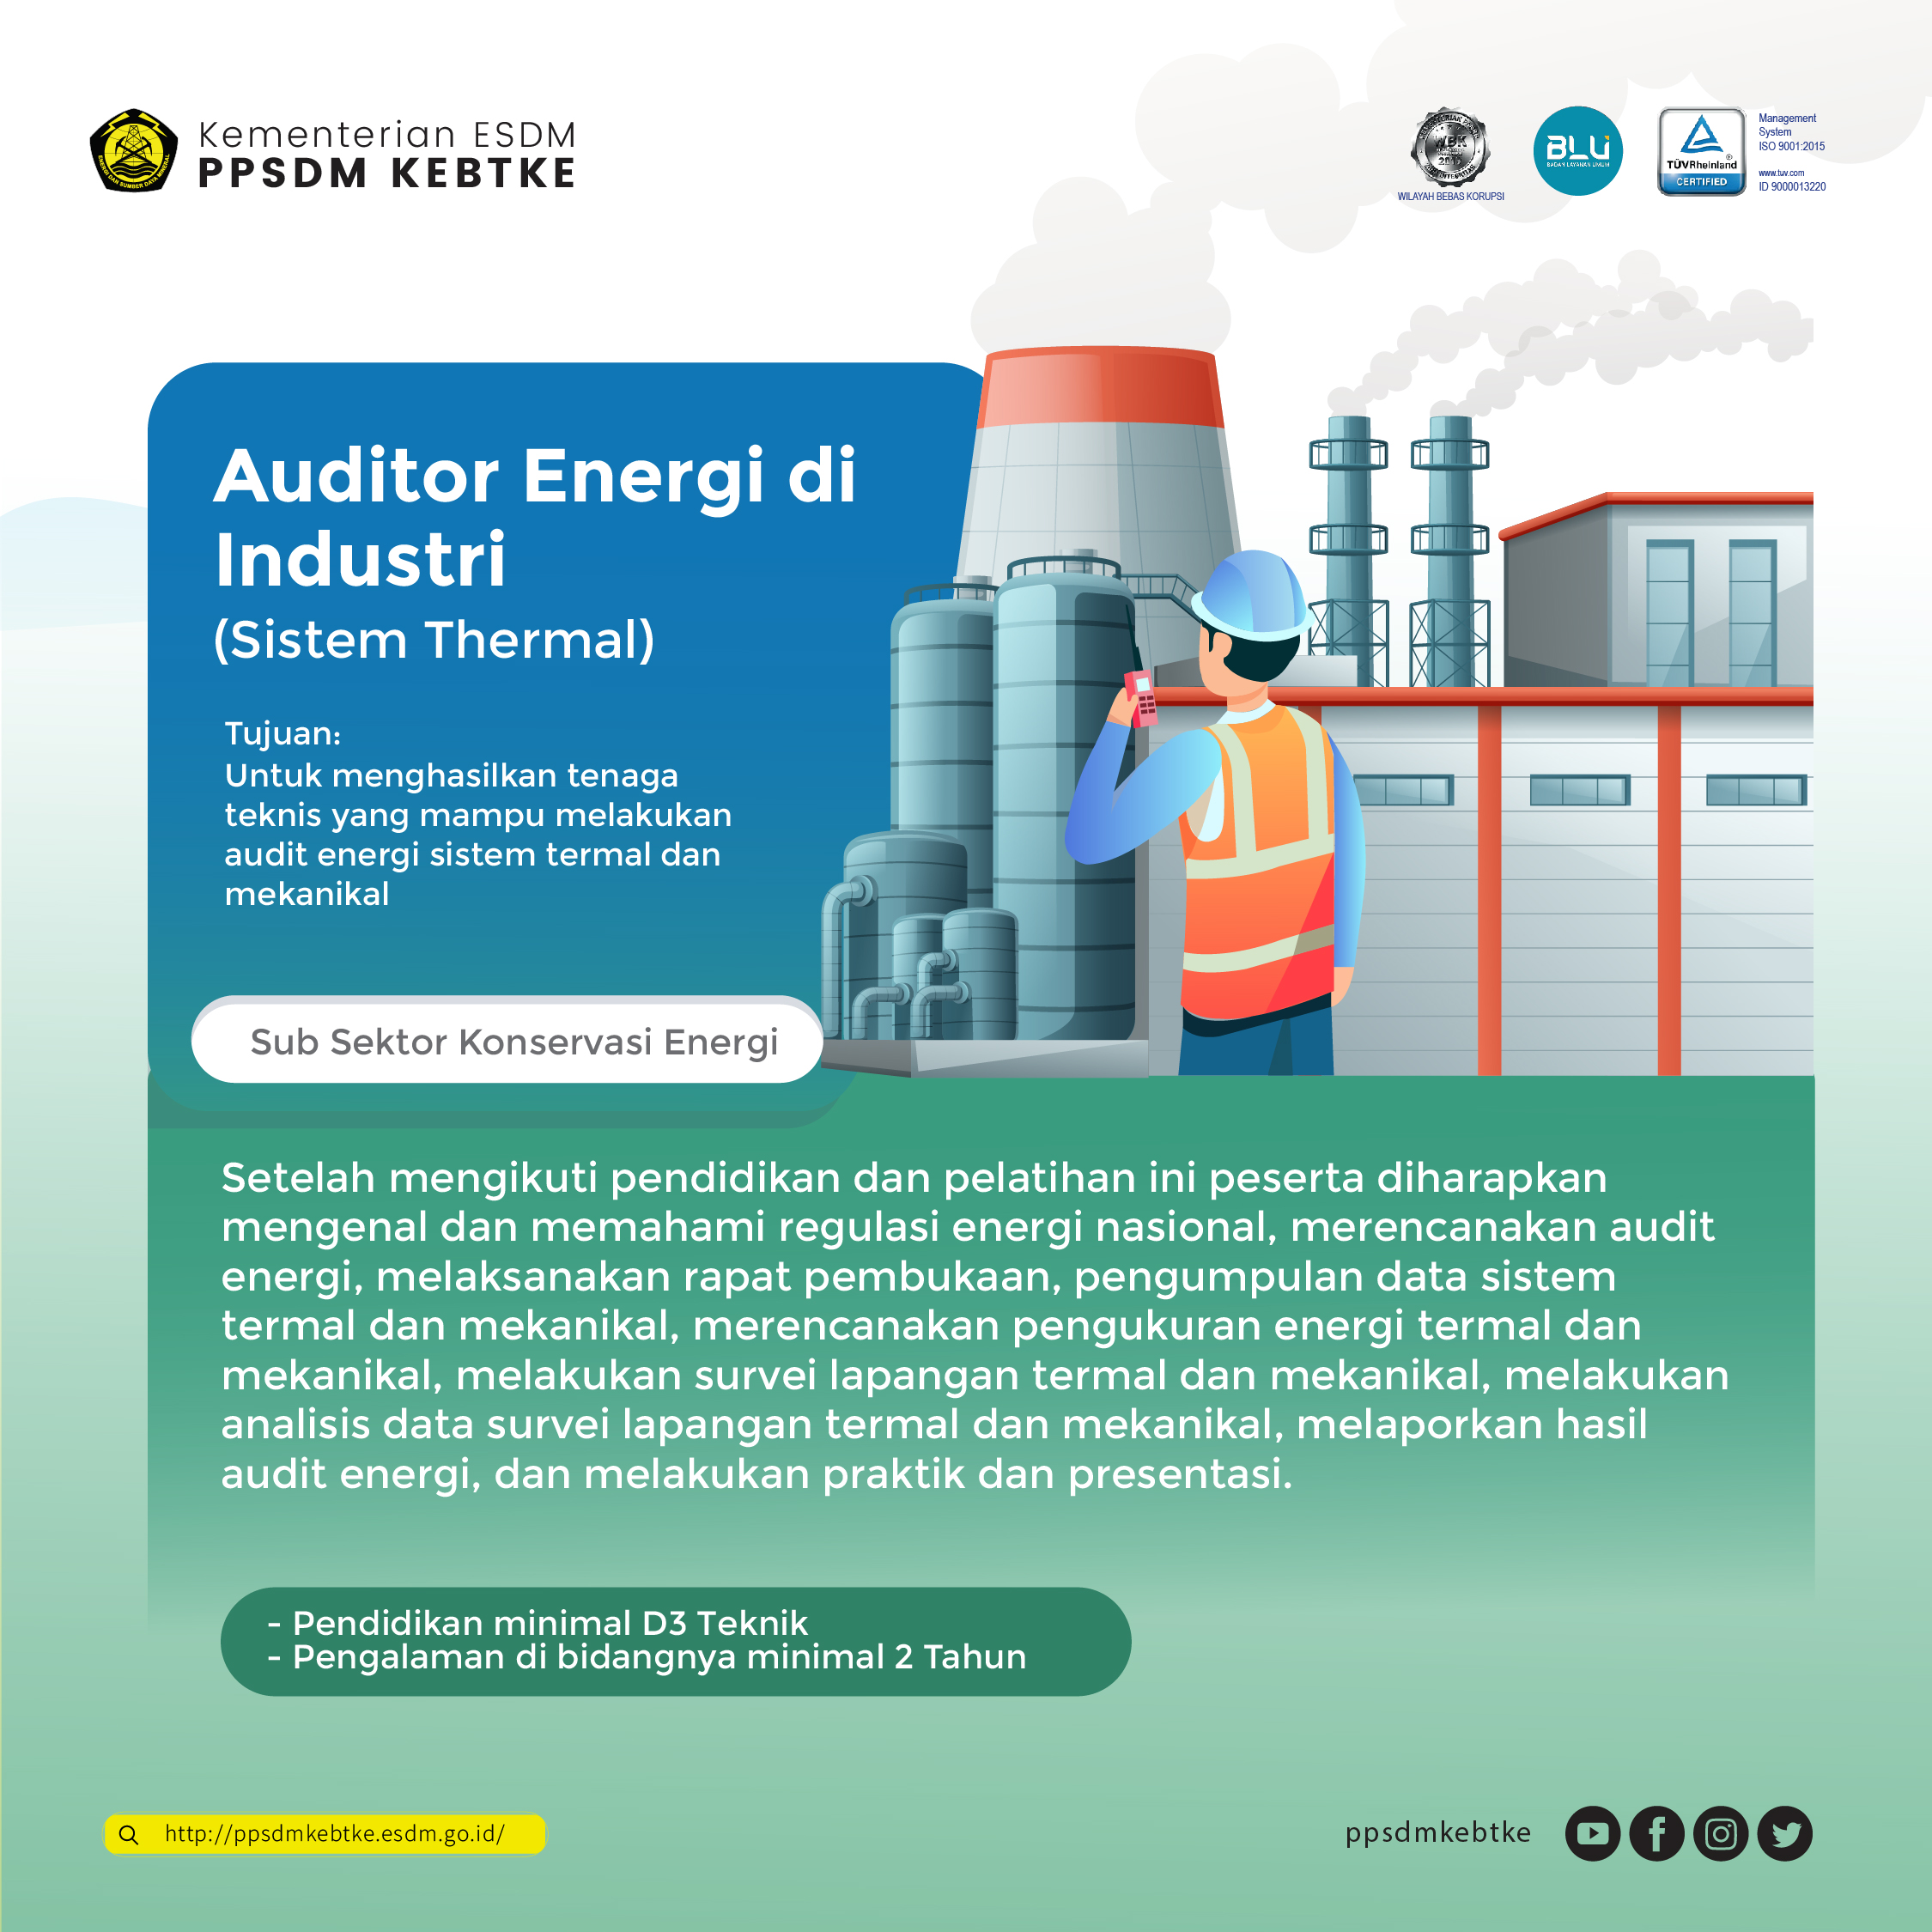 Auditor Energi di Industri (Sistem Thermal)